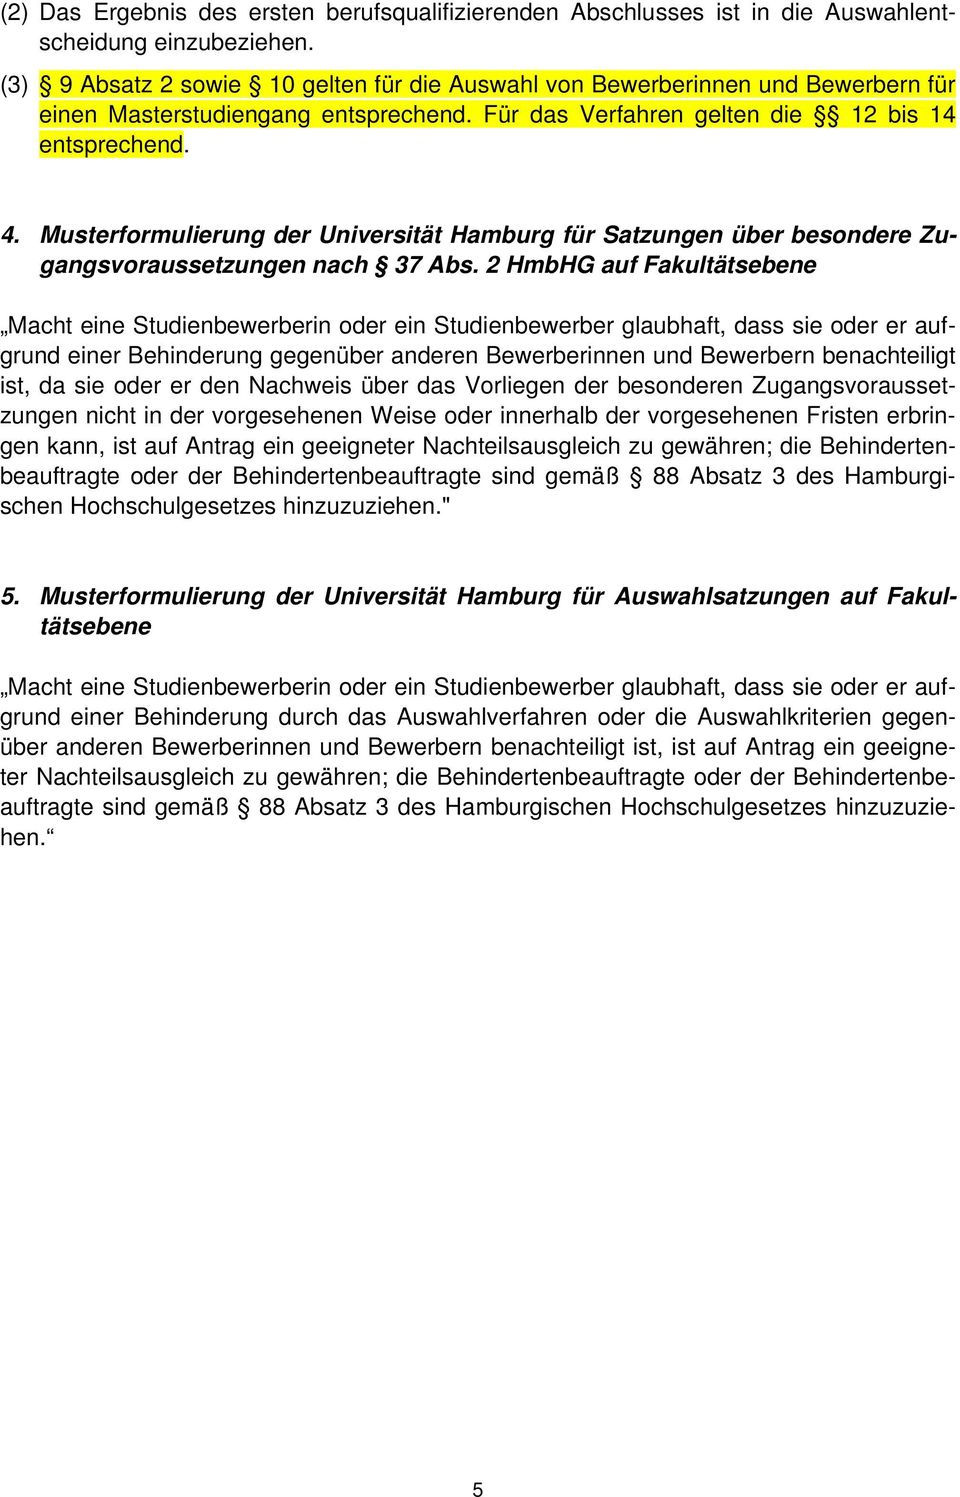 Musterformulierung der Universität Hamburg für Satzungen über besondere Zugangsvoraussetzungen nach 37 Abs.